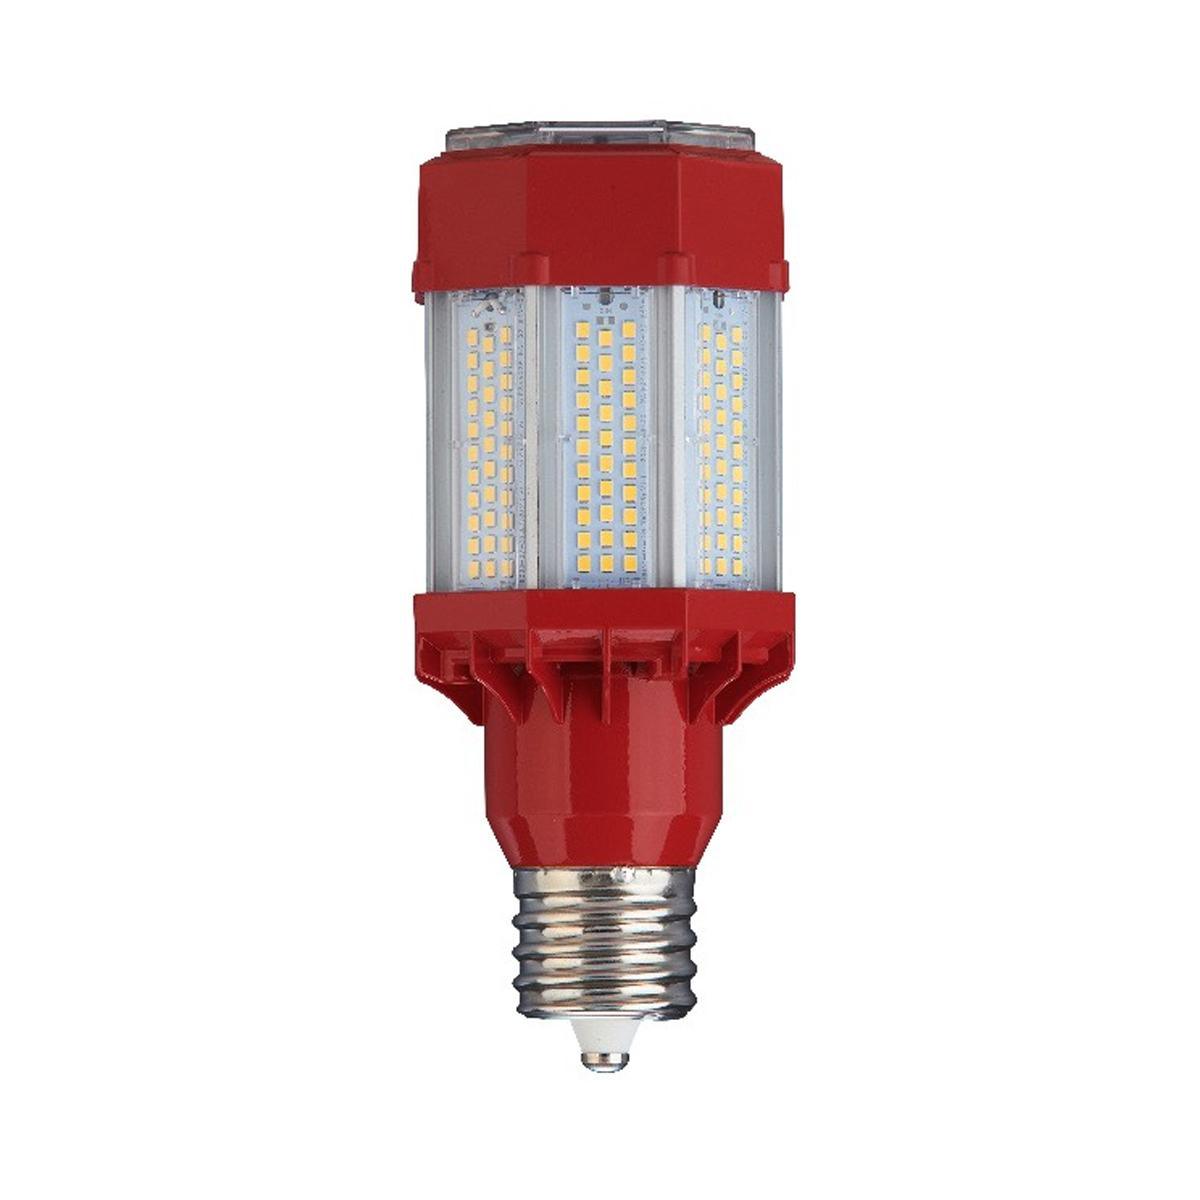 LED Corn Retrofit Lamp, 45W, 6620 Lumens, 5000K, E26 Mogul Base, 120-277V